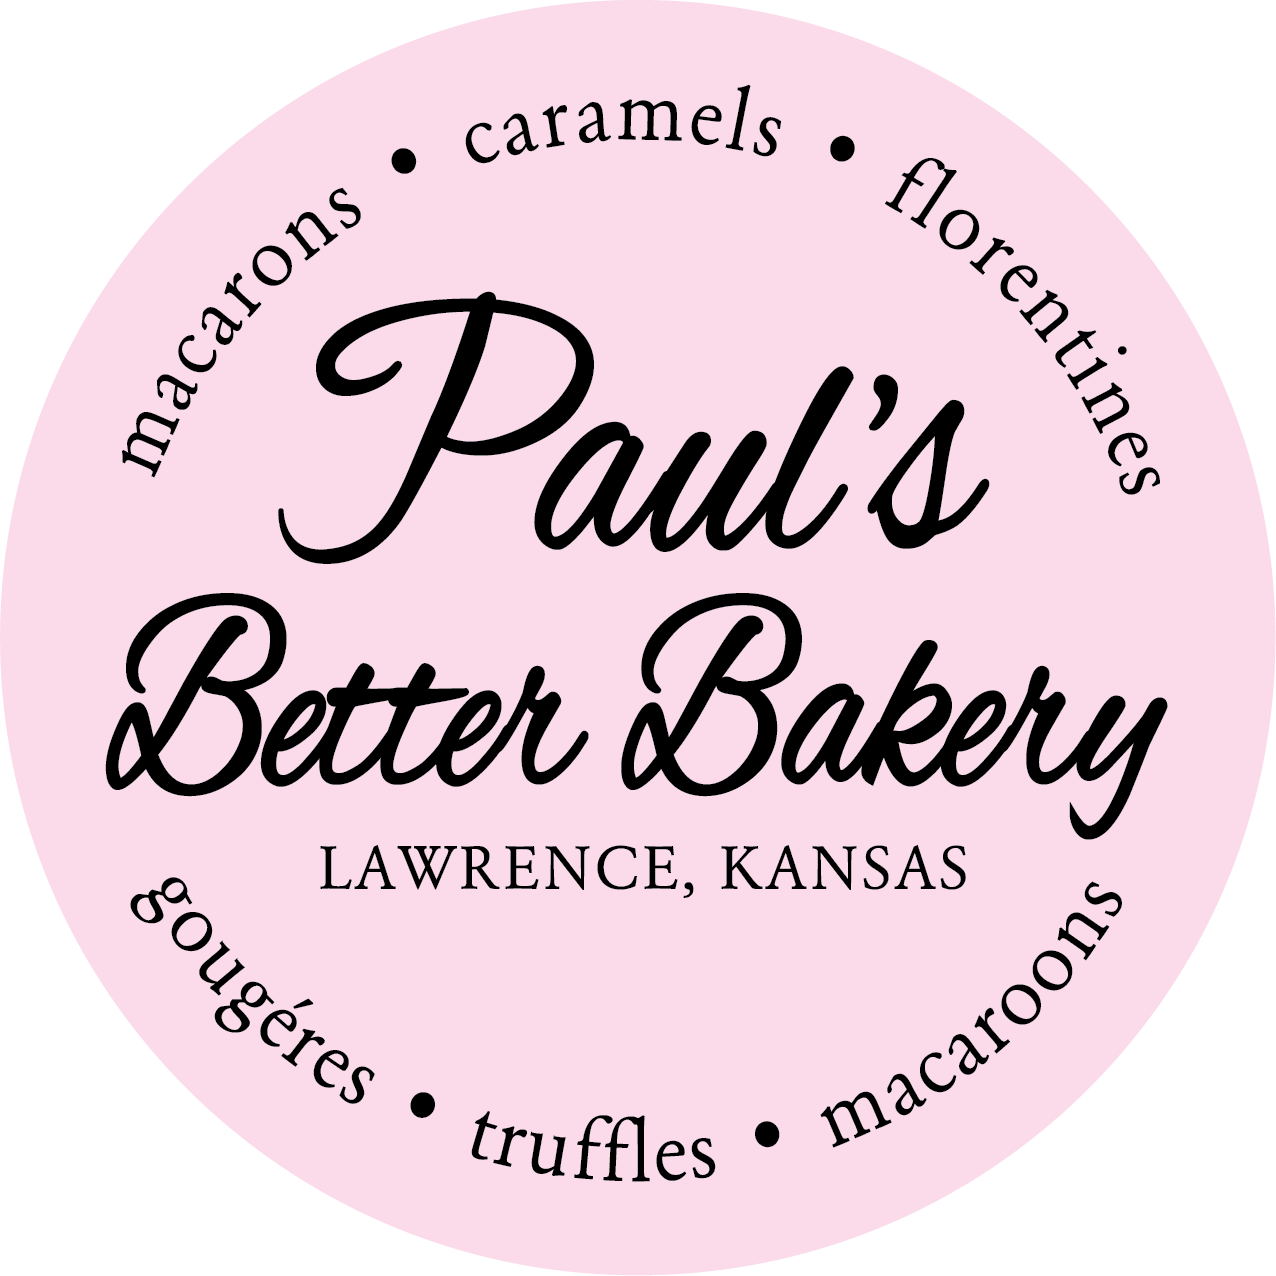 Paul's Better Bakery